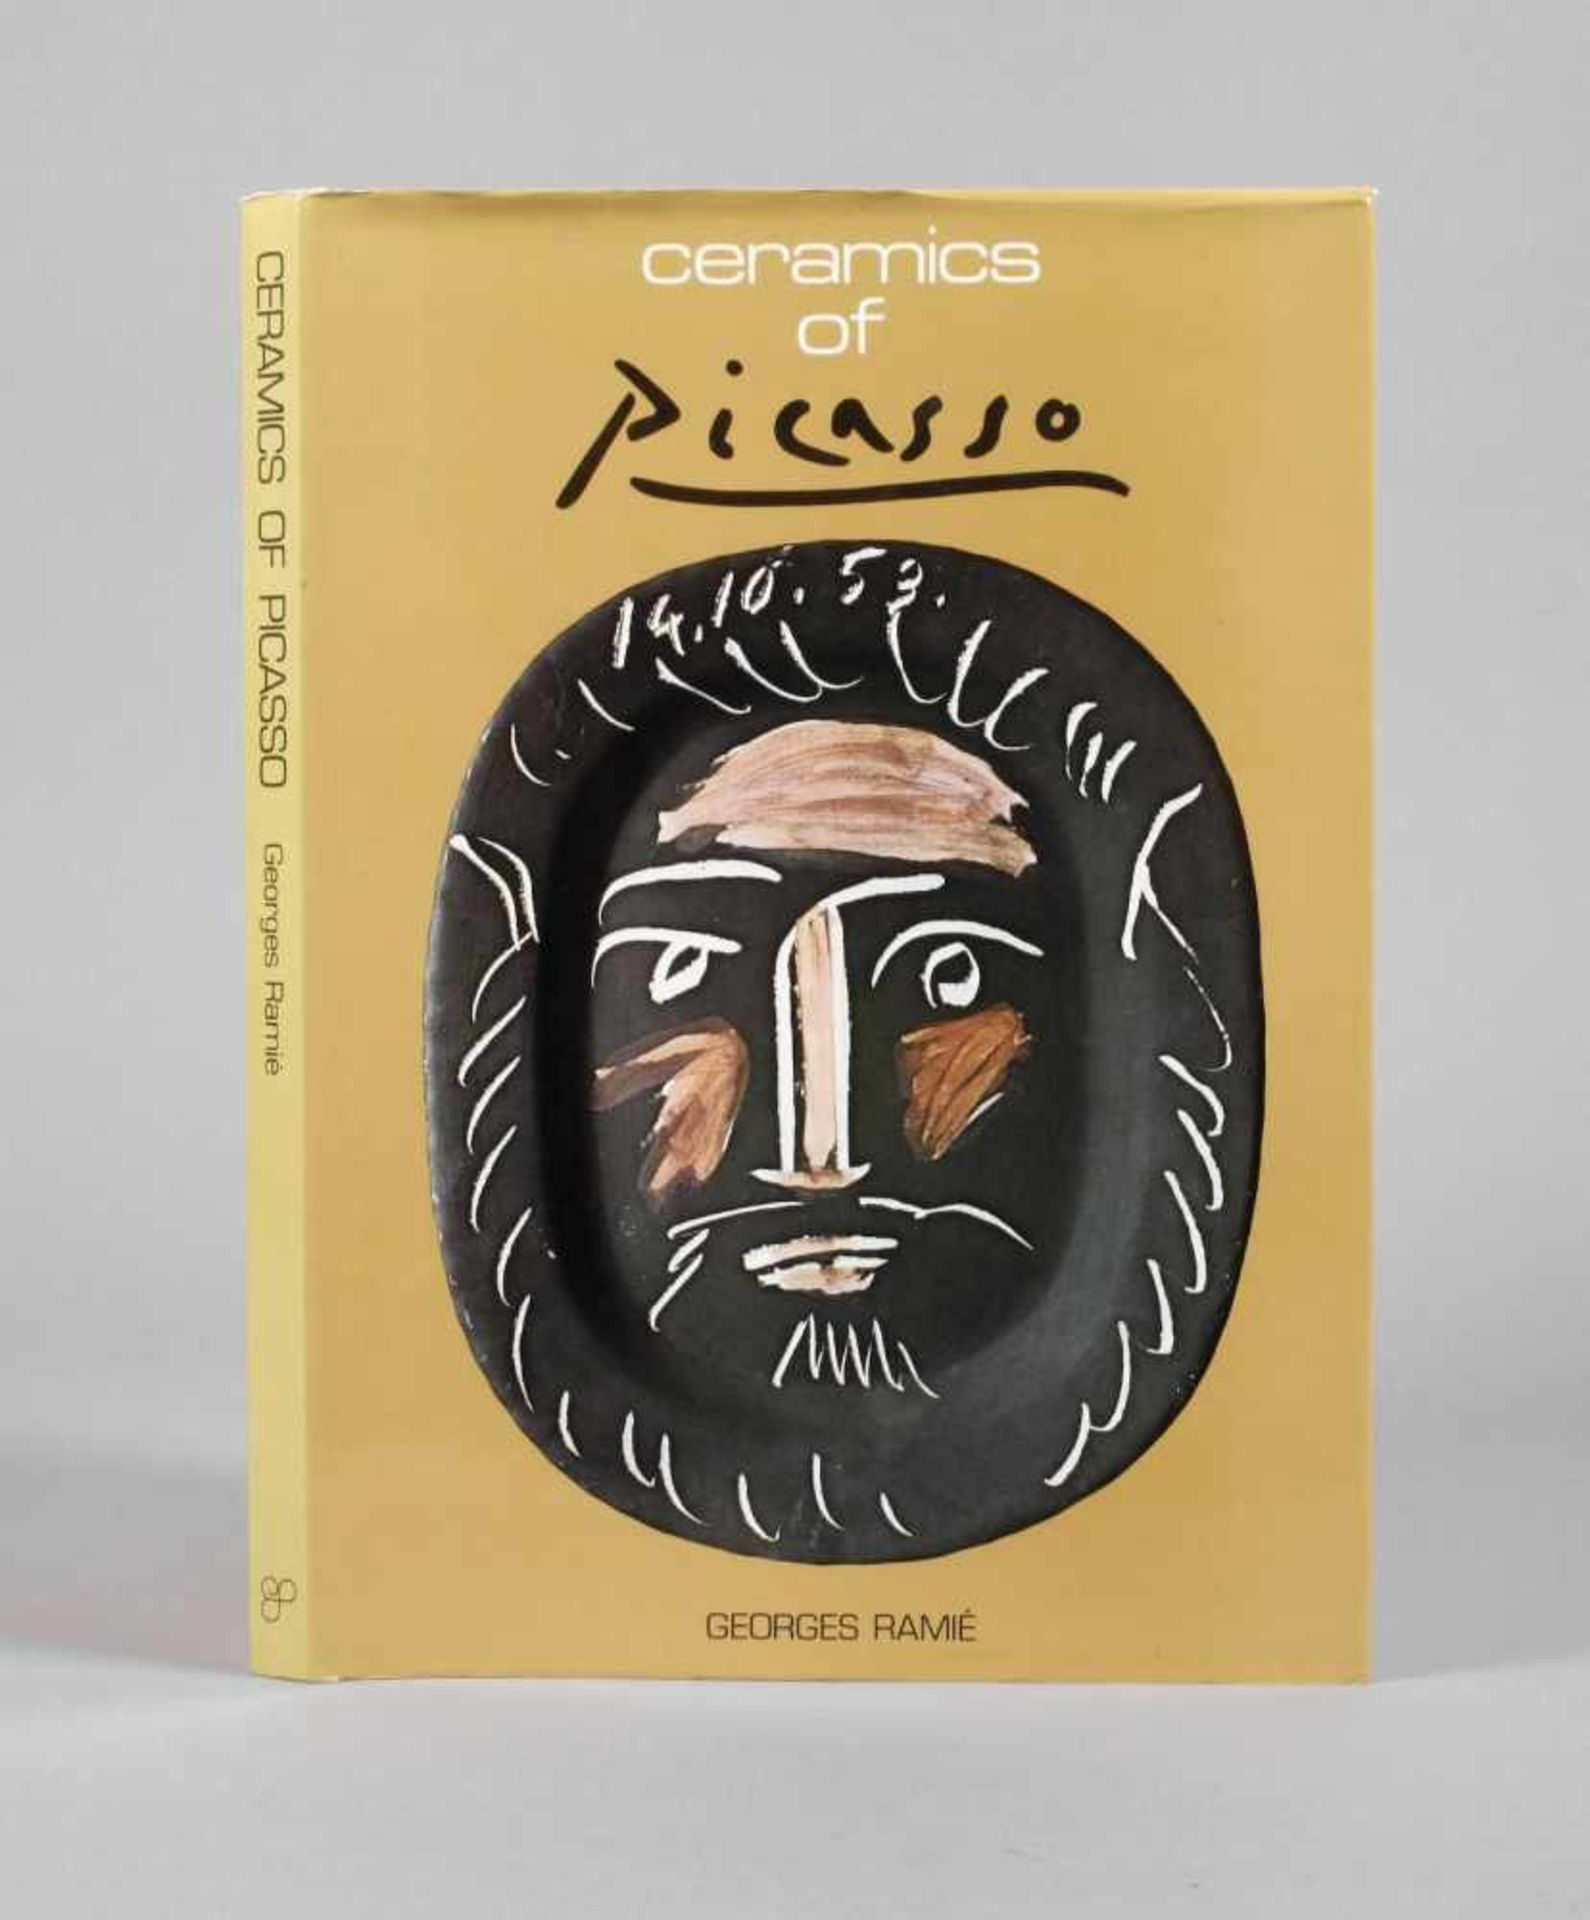 Ceramics of PicassoGeorges Ramié, 1985, Format 4°, 128 S., 223 farbige Illustrationen, mit